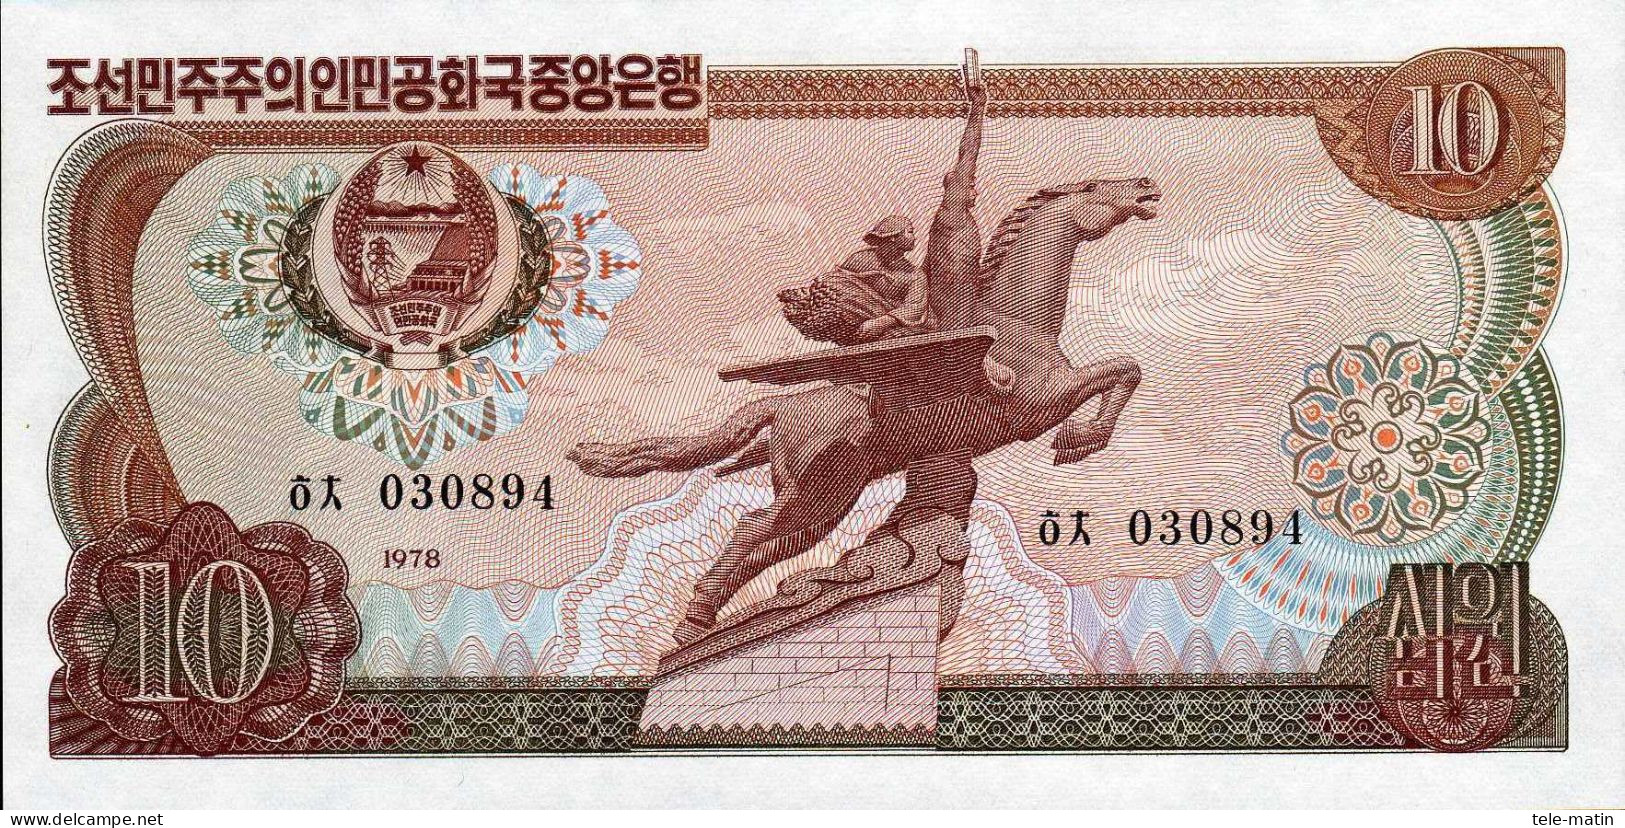 25 billets de la Corée du nord